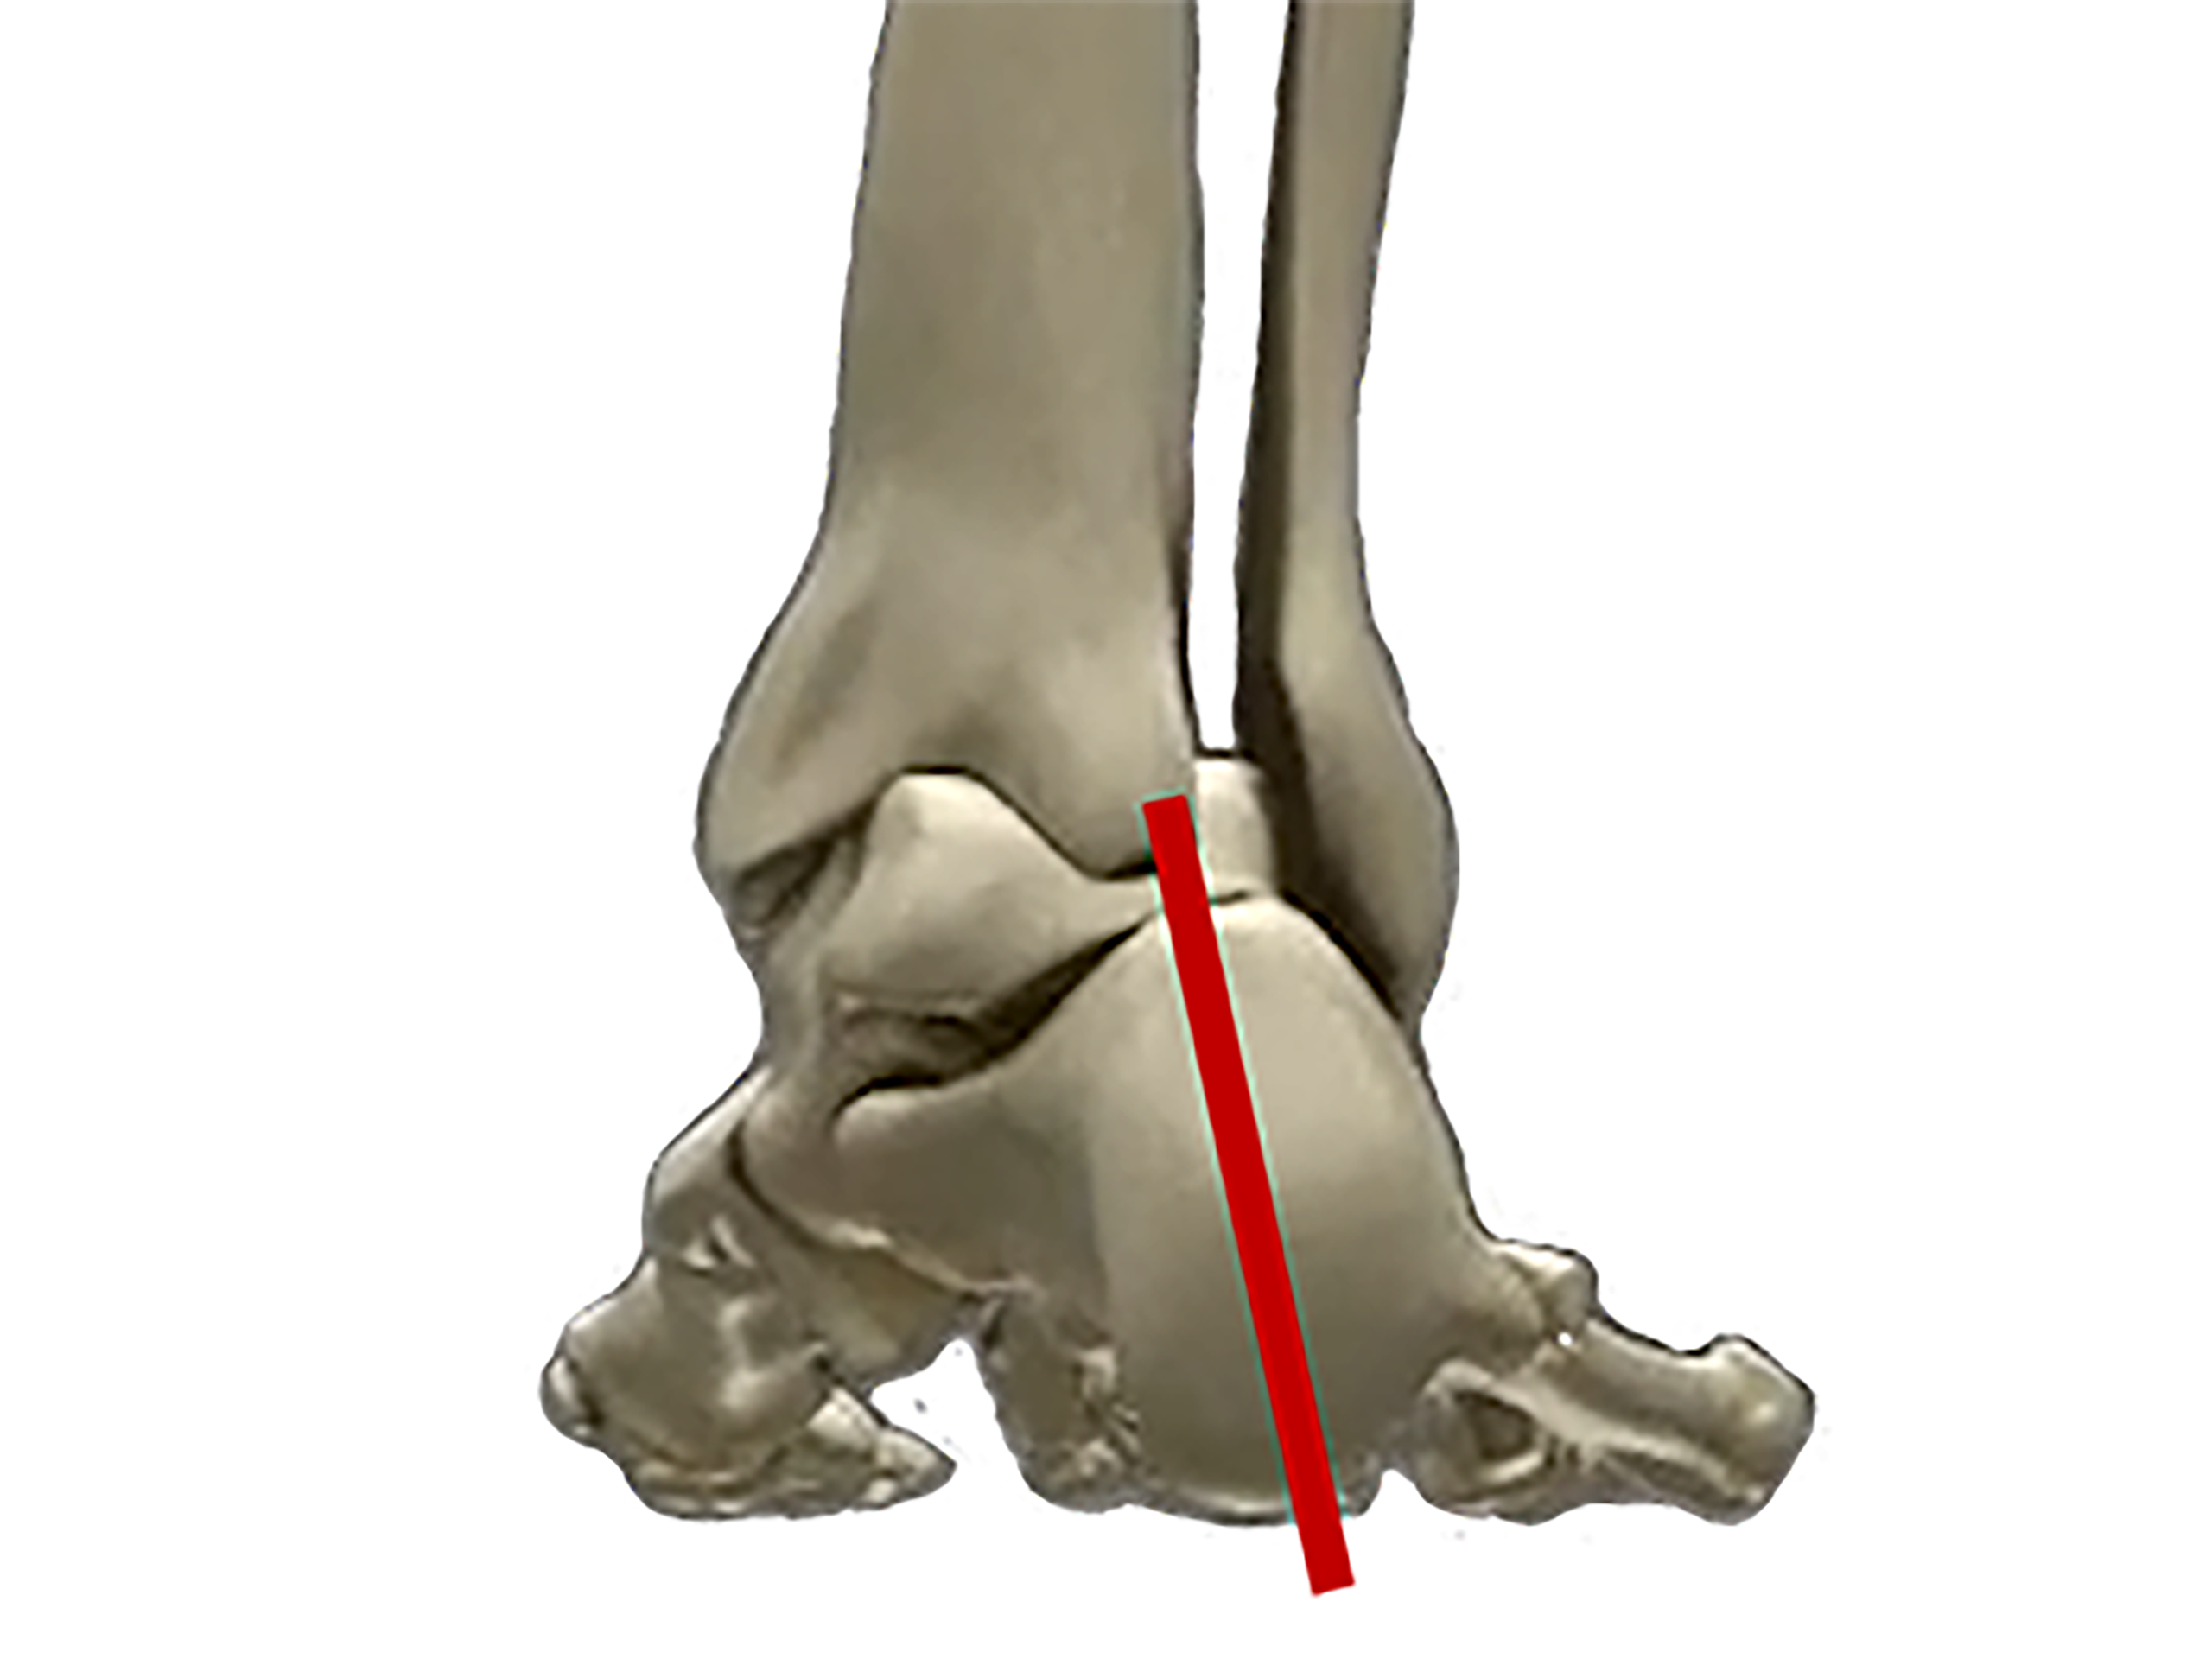 右足のかかと周りの骨の図
足の悩み何ですか？
過剰回内
オーバープロネーション
NWPL社のファンクショナルオーソティックス®およびファンクショナルインソール